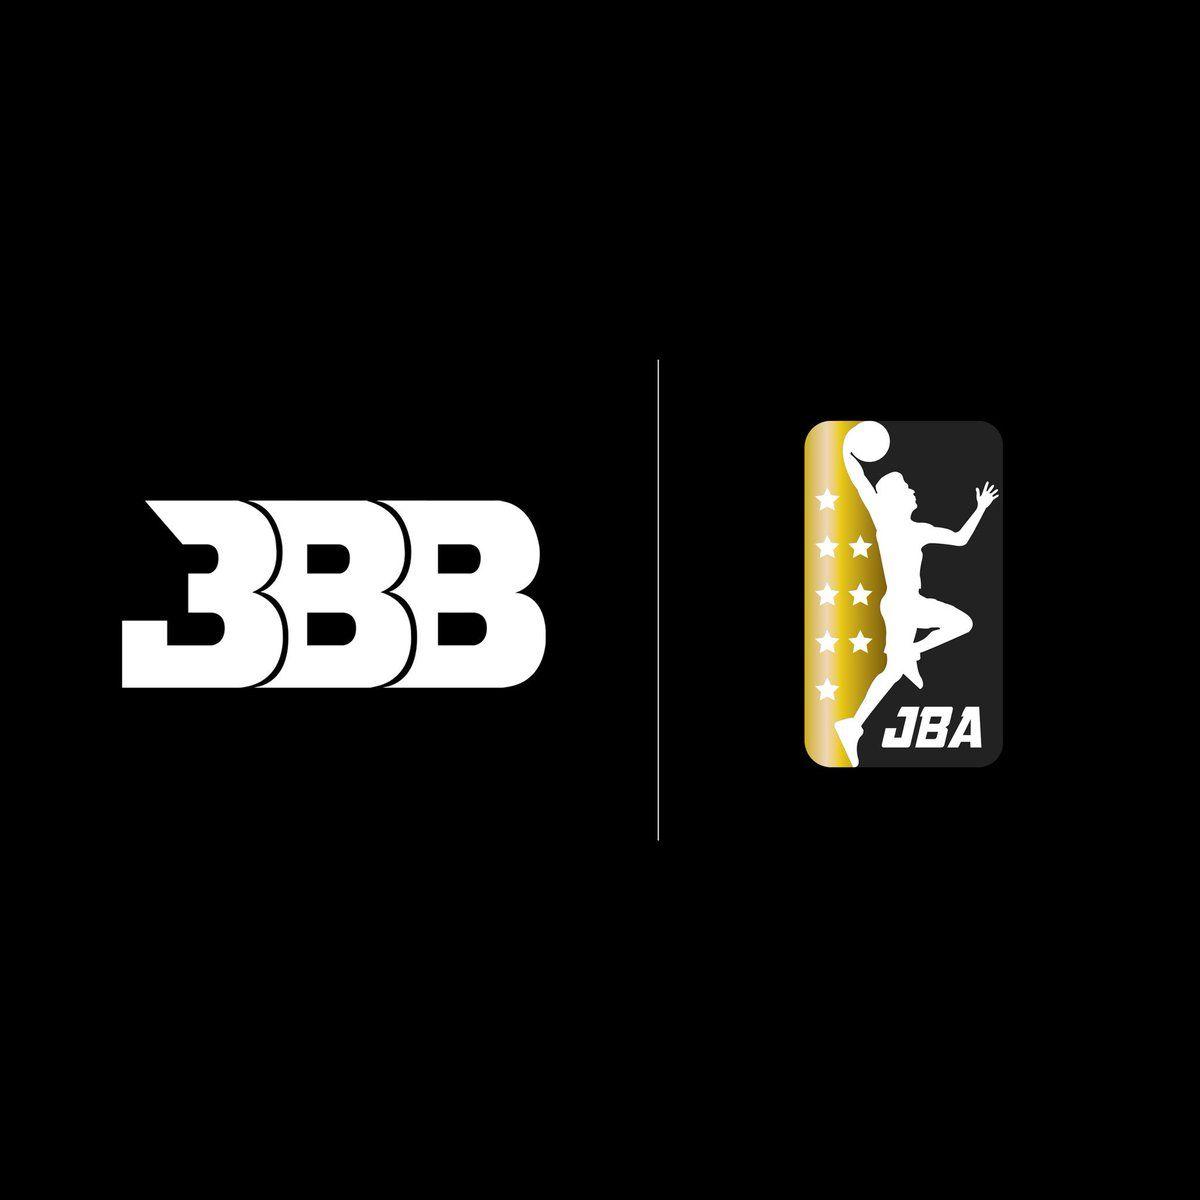 Big Baller Brand Logo - Big Baller Brand 2018. The game will be forever